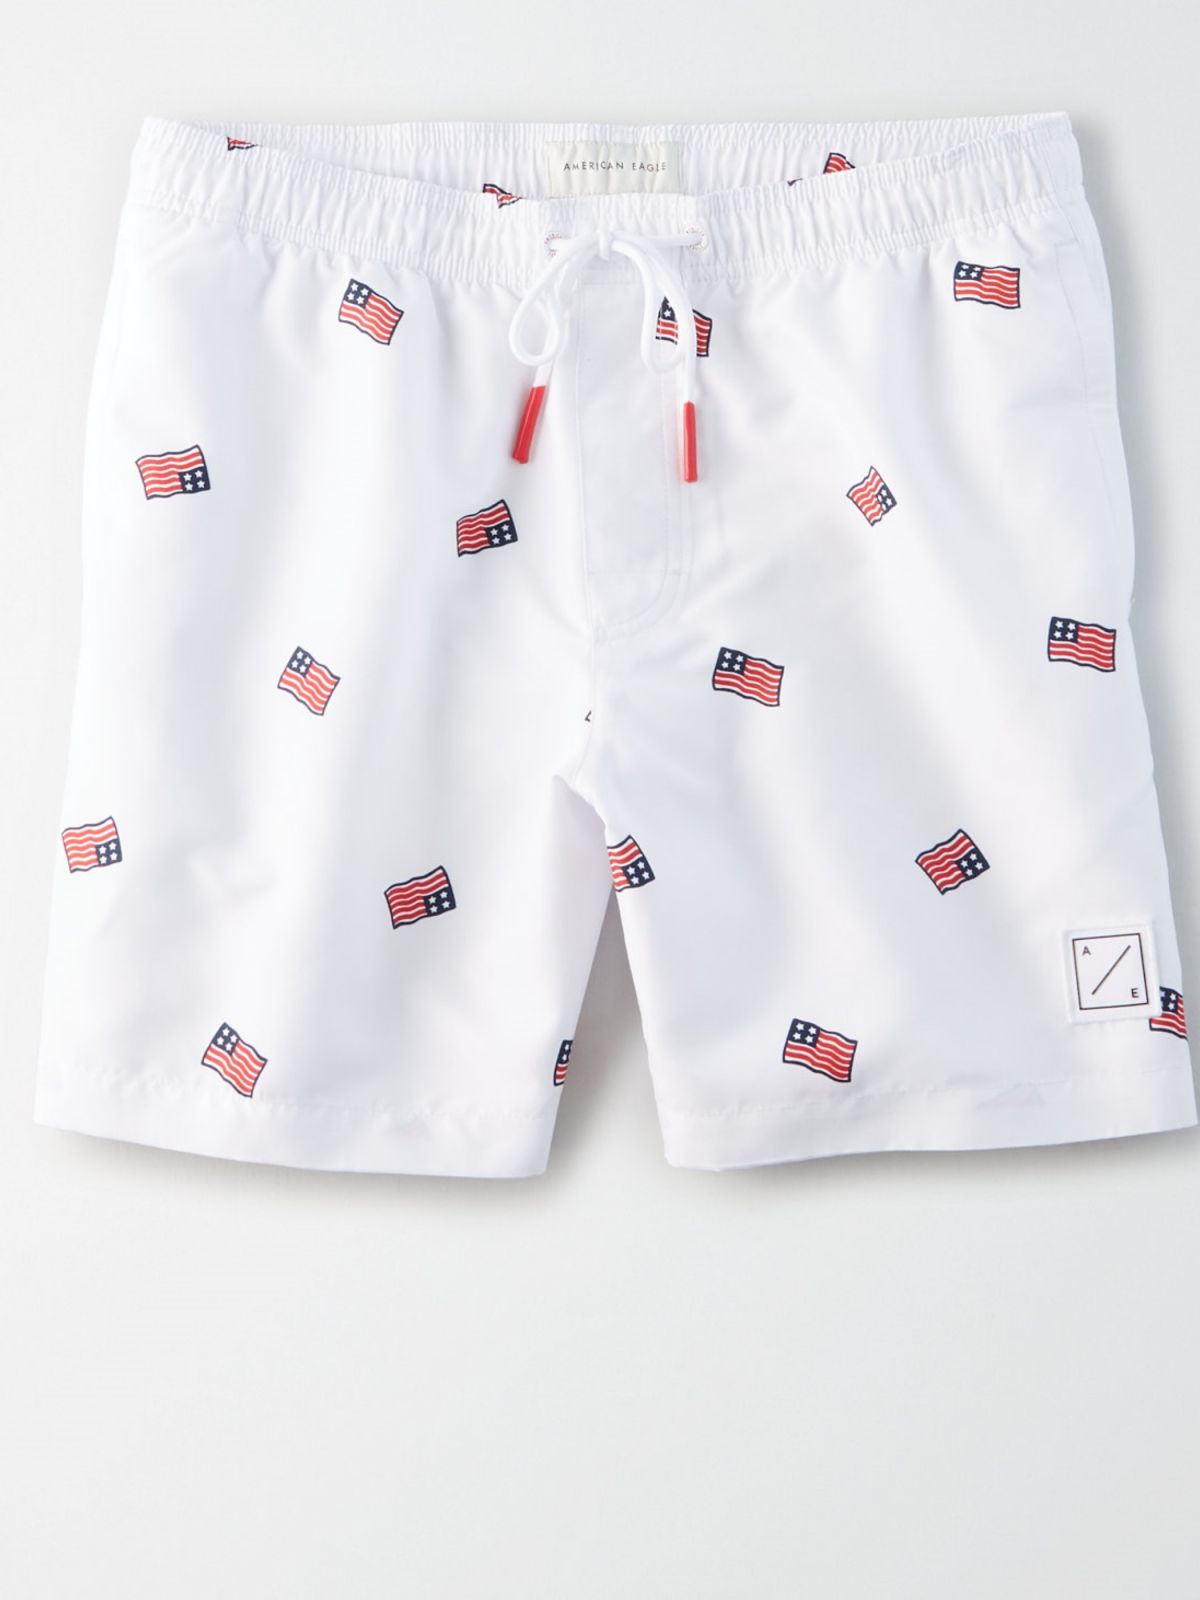  מכנסי בגד ים בהדפס דגל אמריקה / גברים של AMERICAN EAGLE